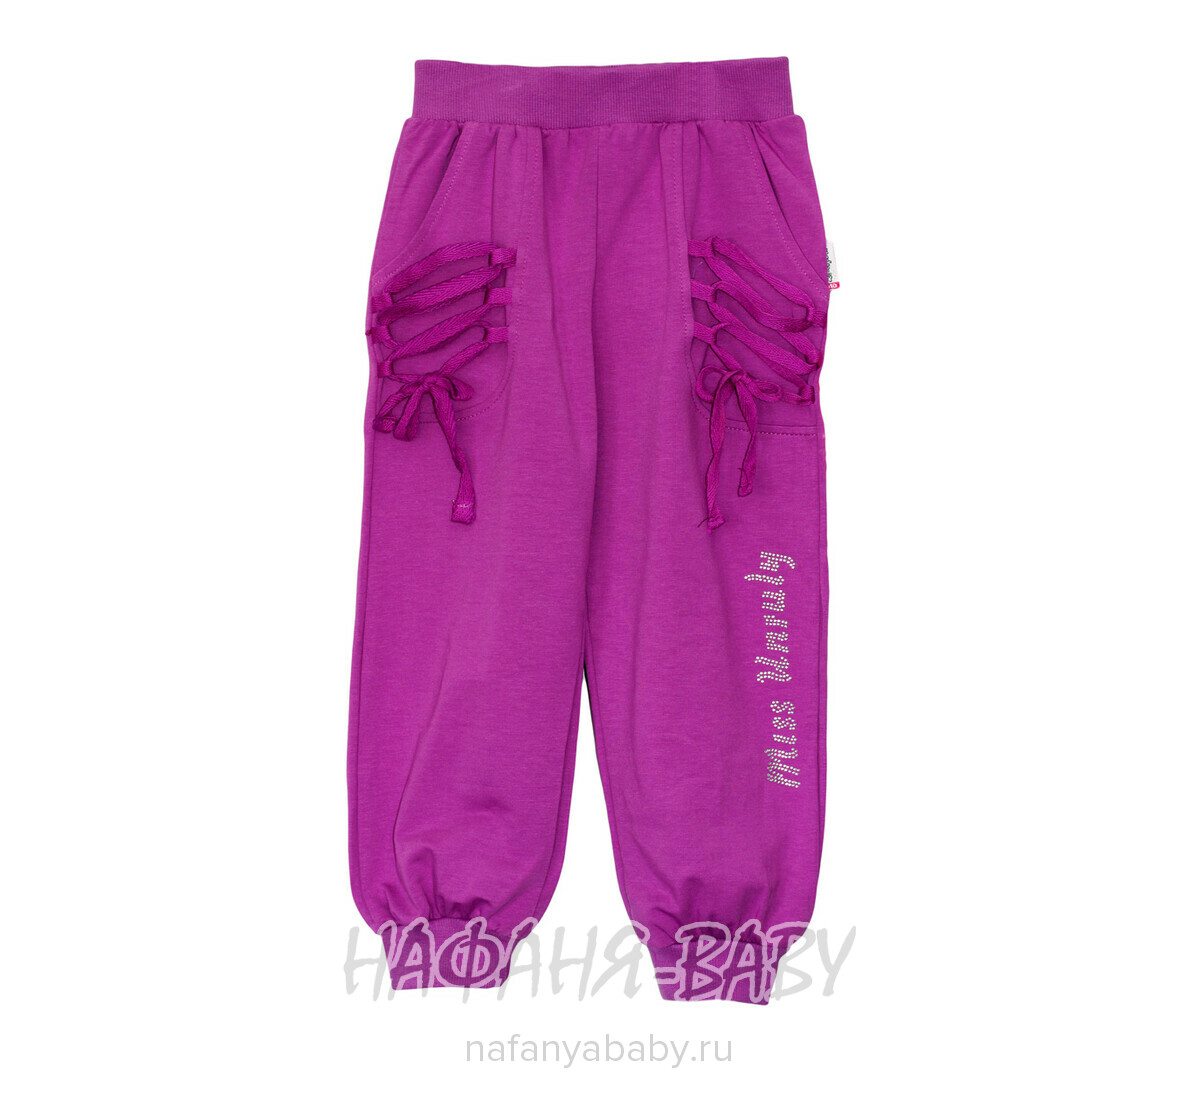 Детские брюки UNRULY, купить в интернет магазине Нафаня. арт: 4603.